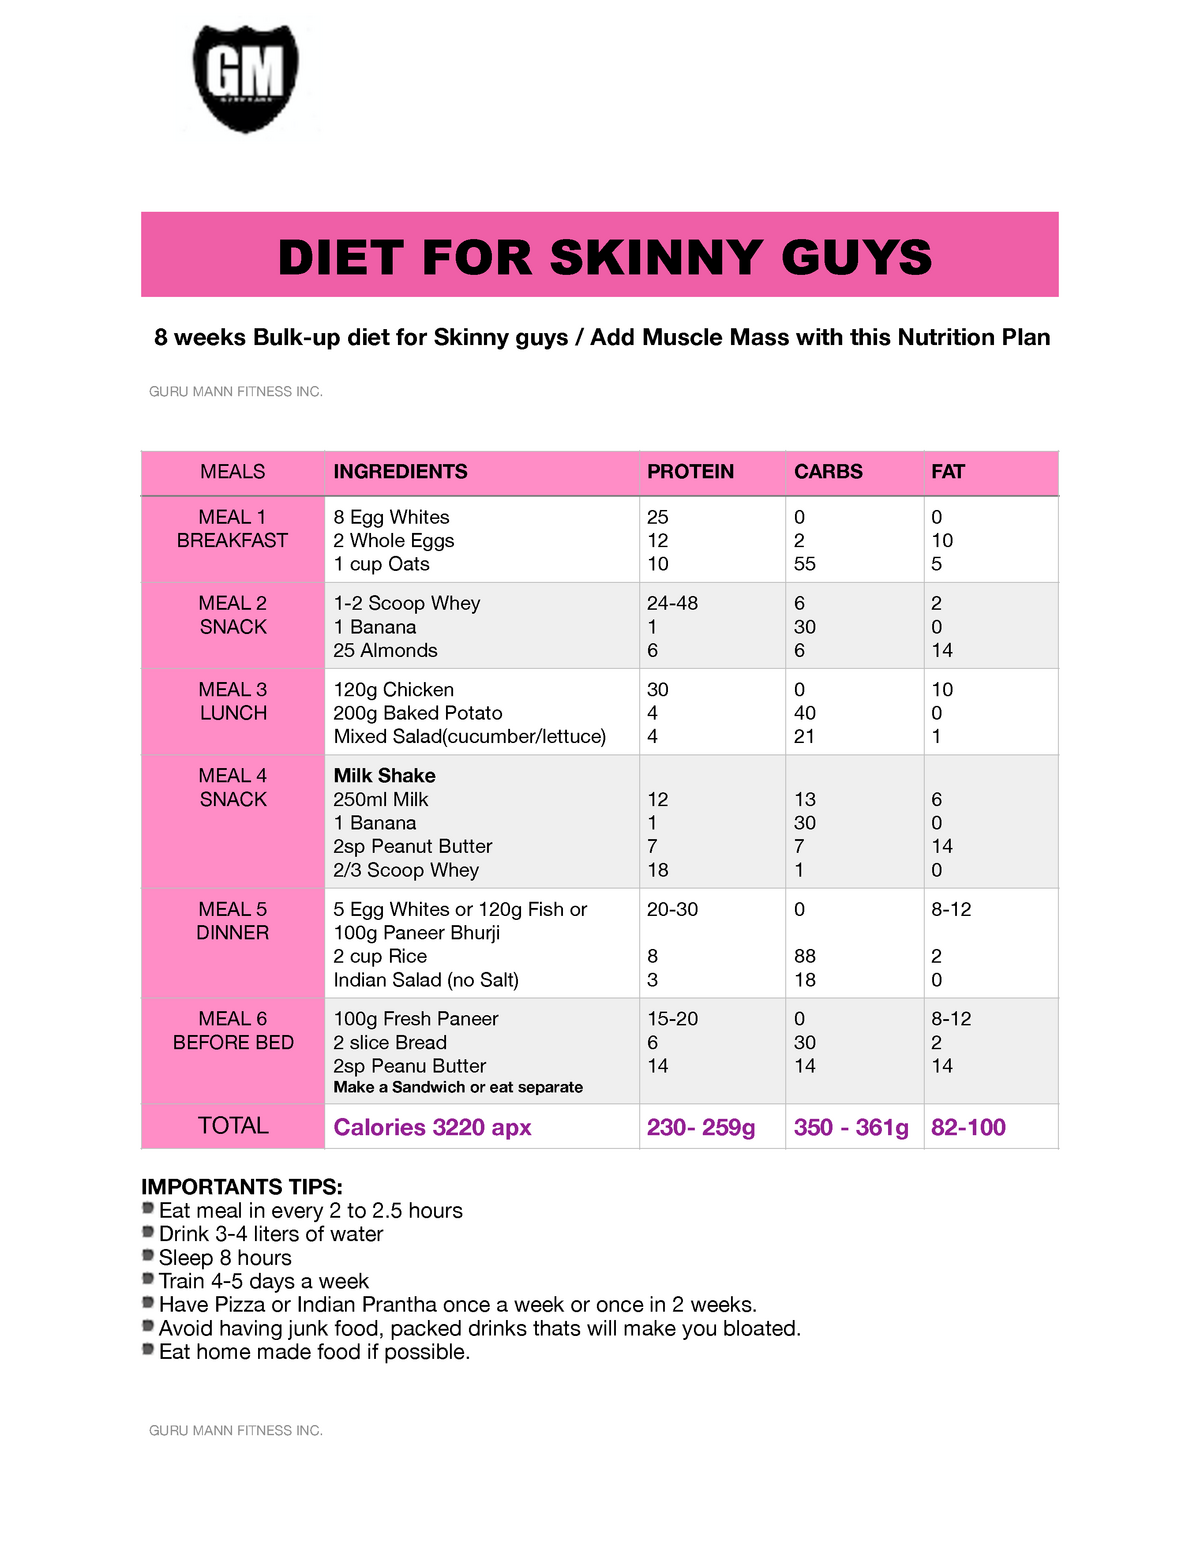 Diet For Skinny Guys By Guru Mann - 8 Weeks Bulk-up Diet For Skinny Guys Add Muscle Mass With This - Studocu